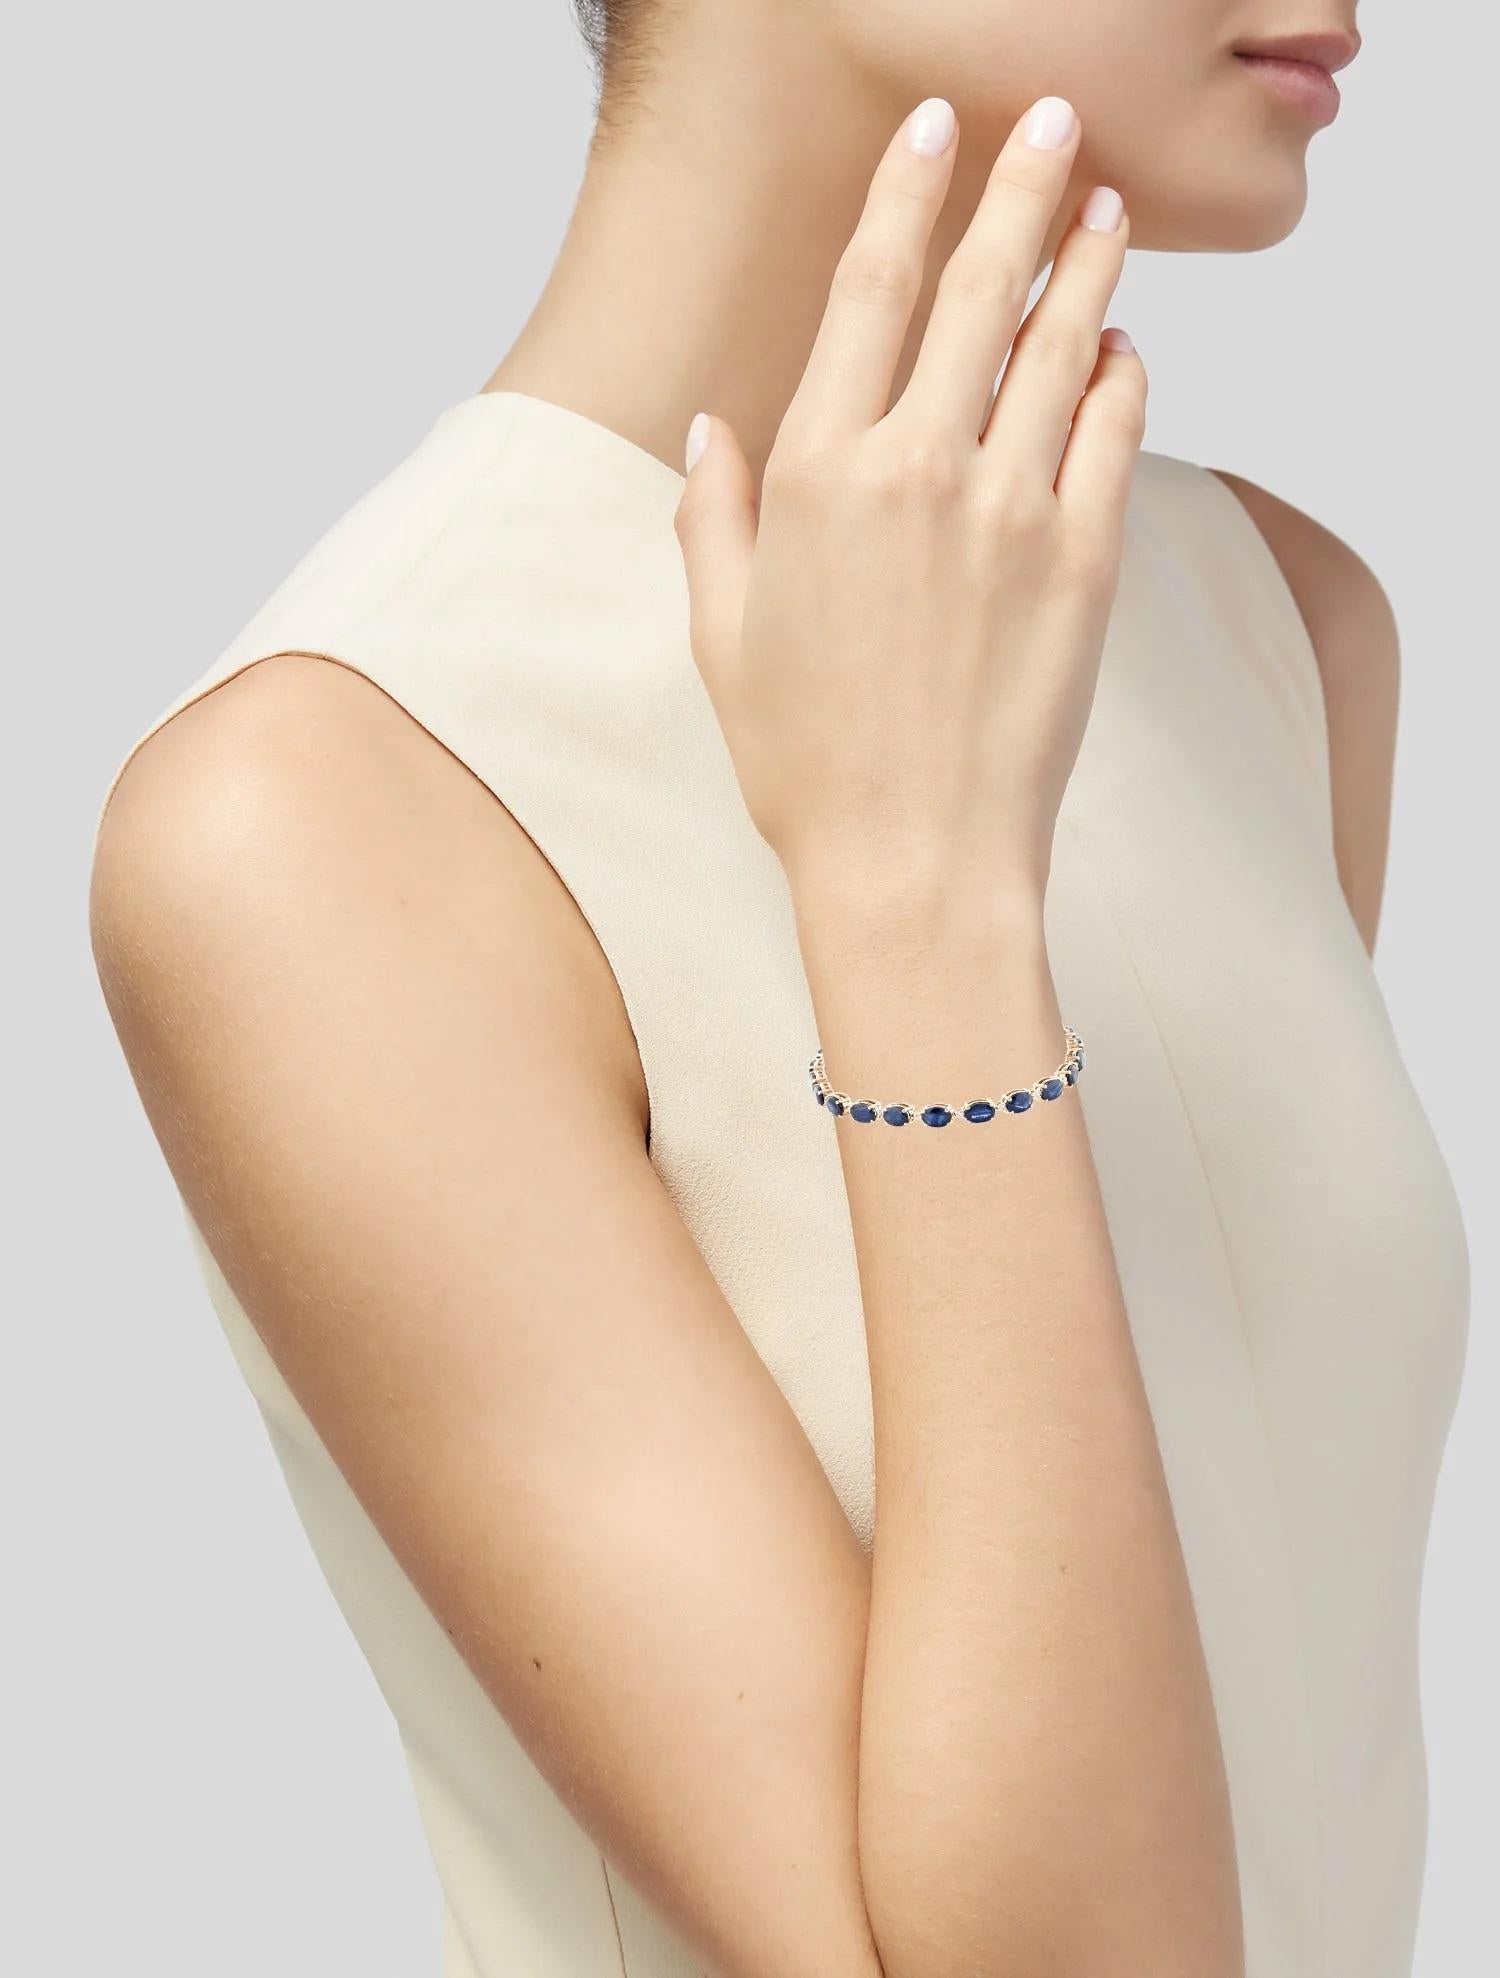 Rehaussez votre collection de bijoux avec cet exquis bracelet à maillons en saphir et diamant 14K. Réalisé en or jaune étincelant, ce bracelet est orné d'une étonnante série de saphirs ovales facettés, totalisant 13,21 carats, dans une teinte bleue